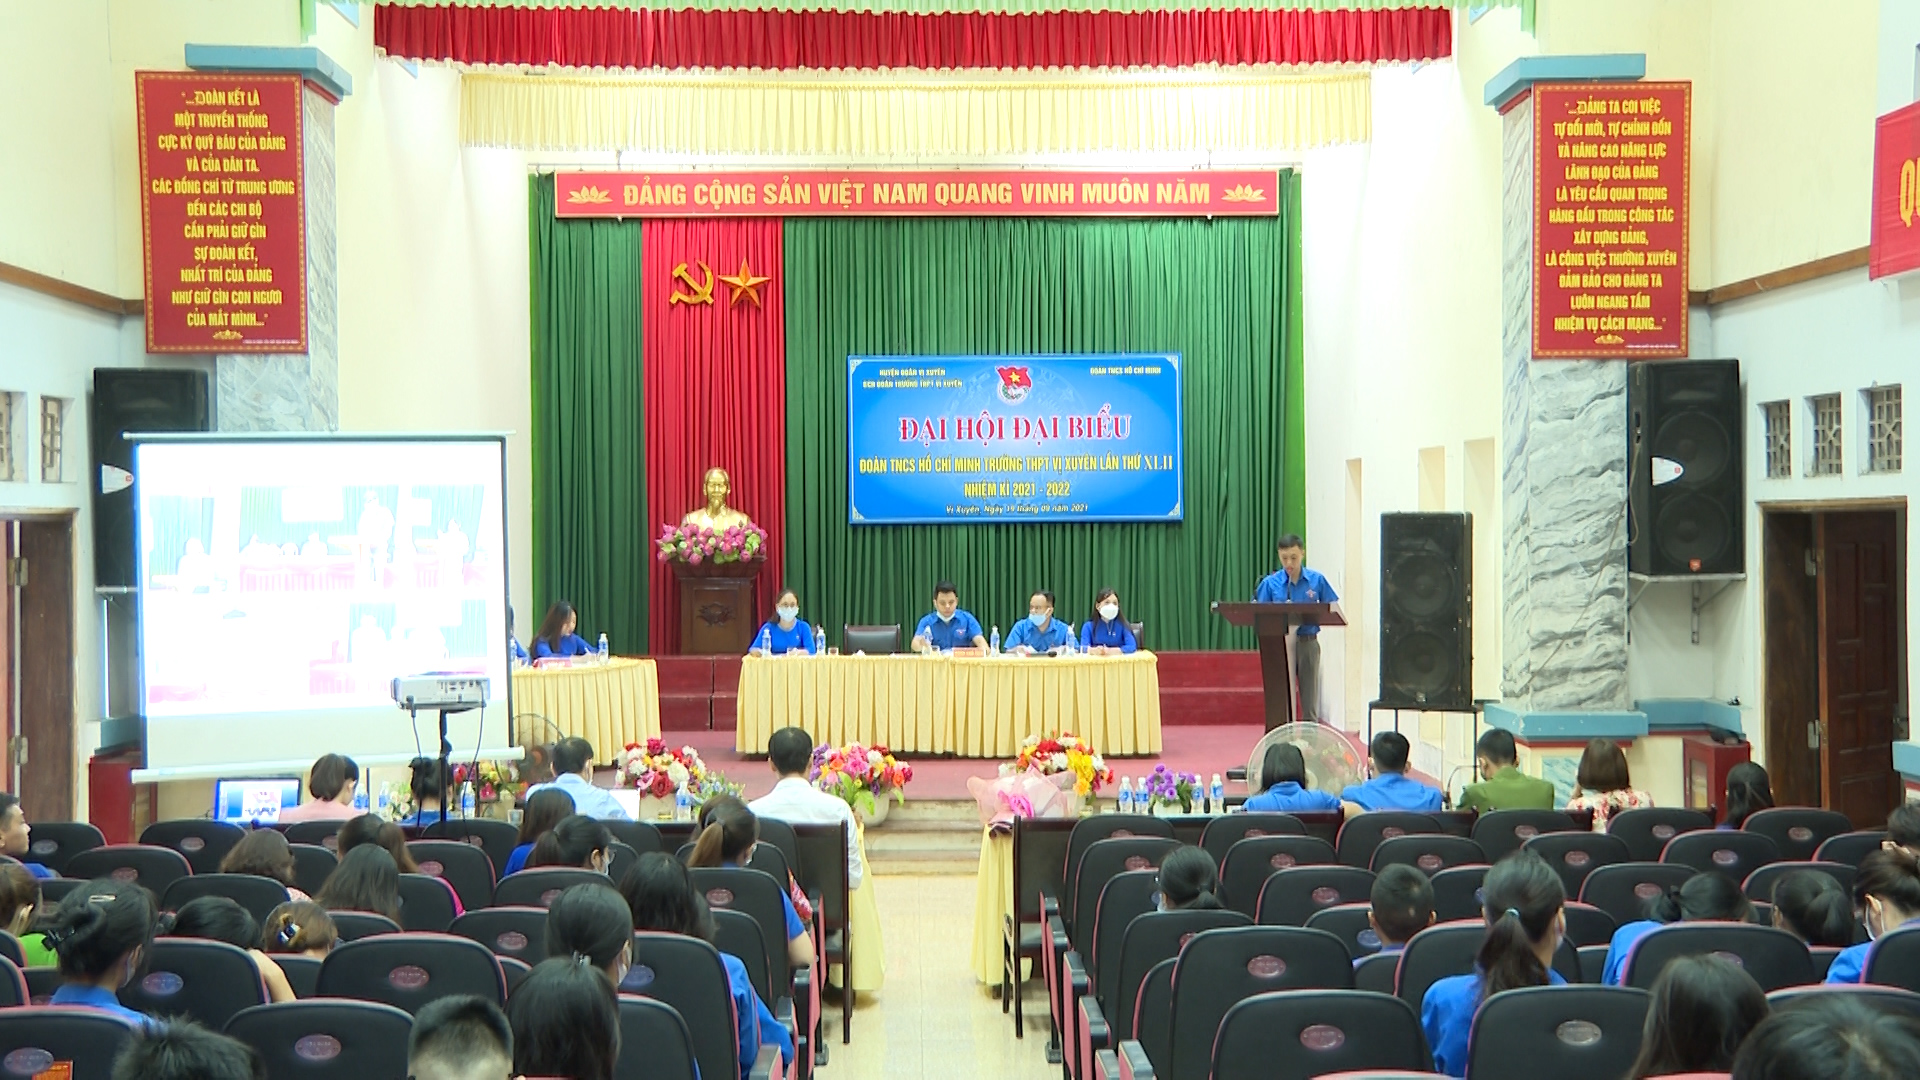 Đại hội đại biểu Đoàn TNCS HCM Trường THPT Vị Xuyên